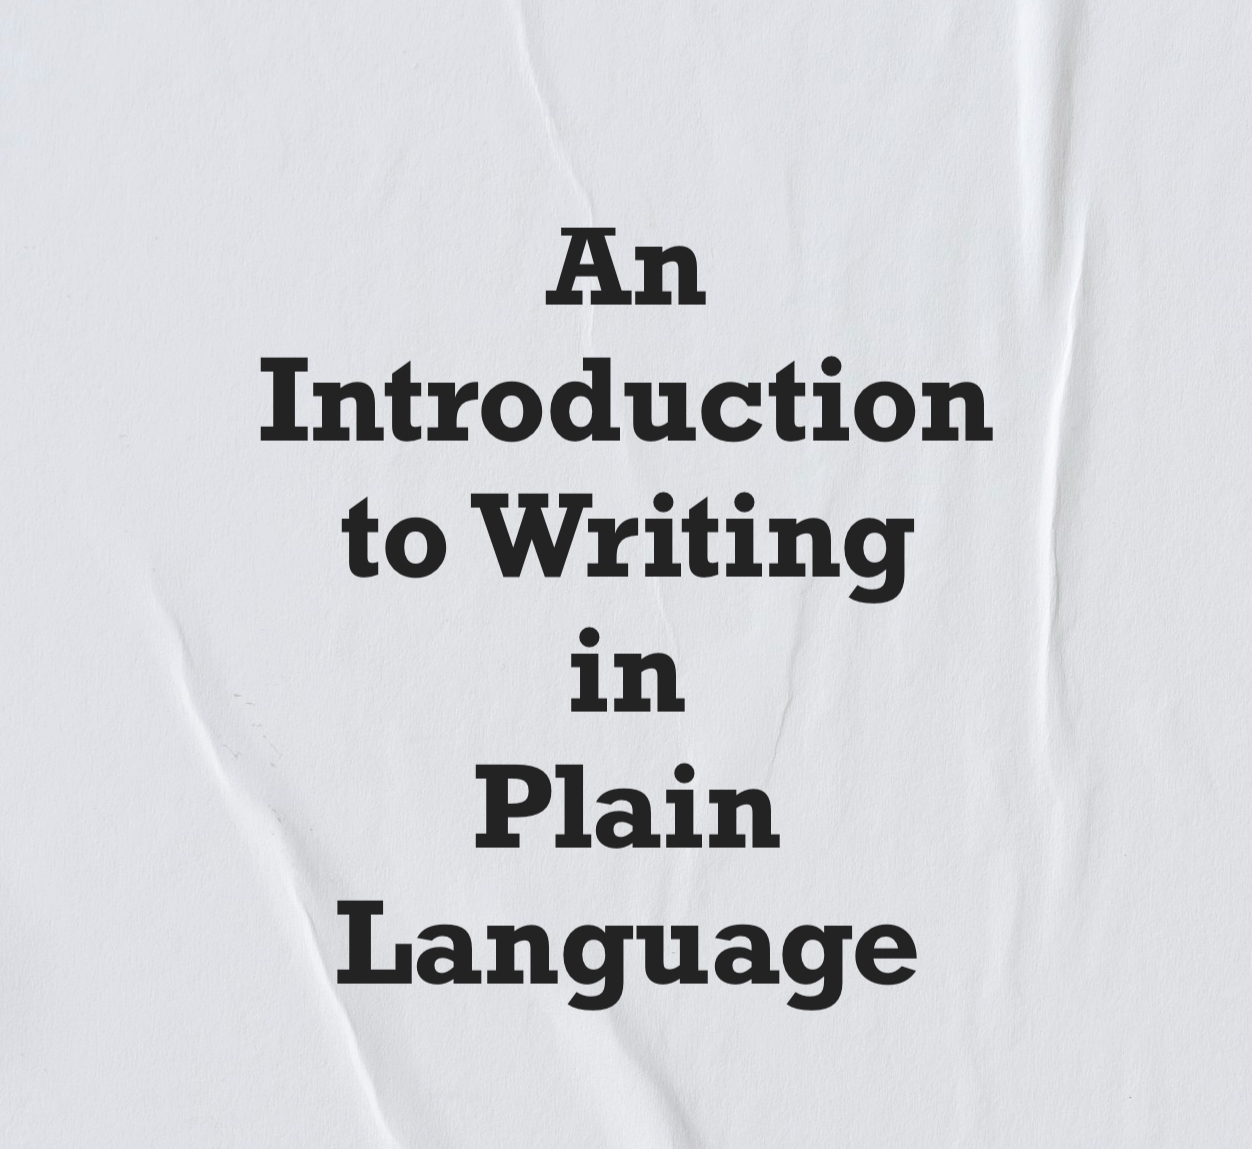 Writing in Plain Language